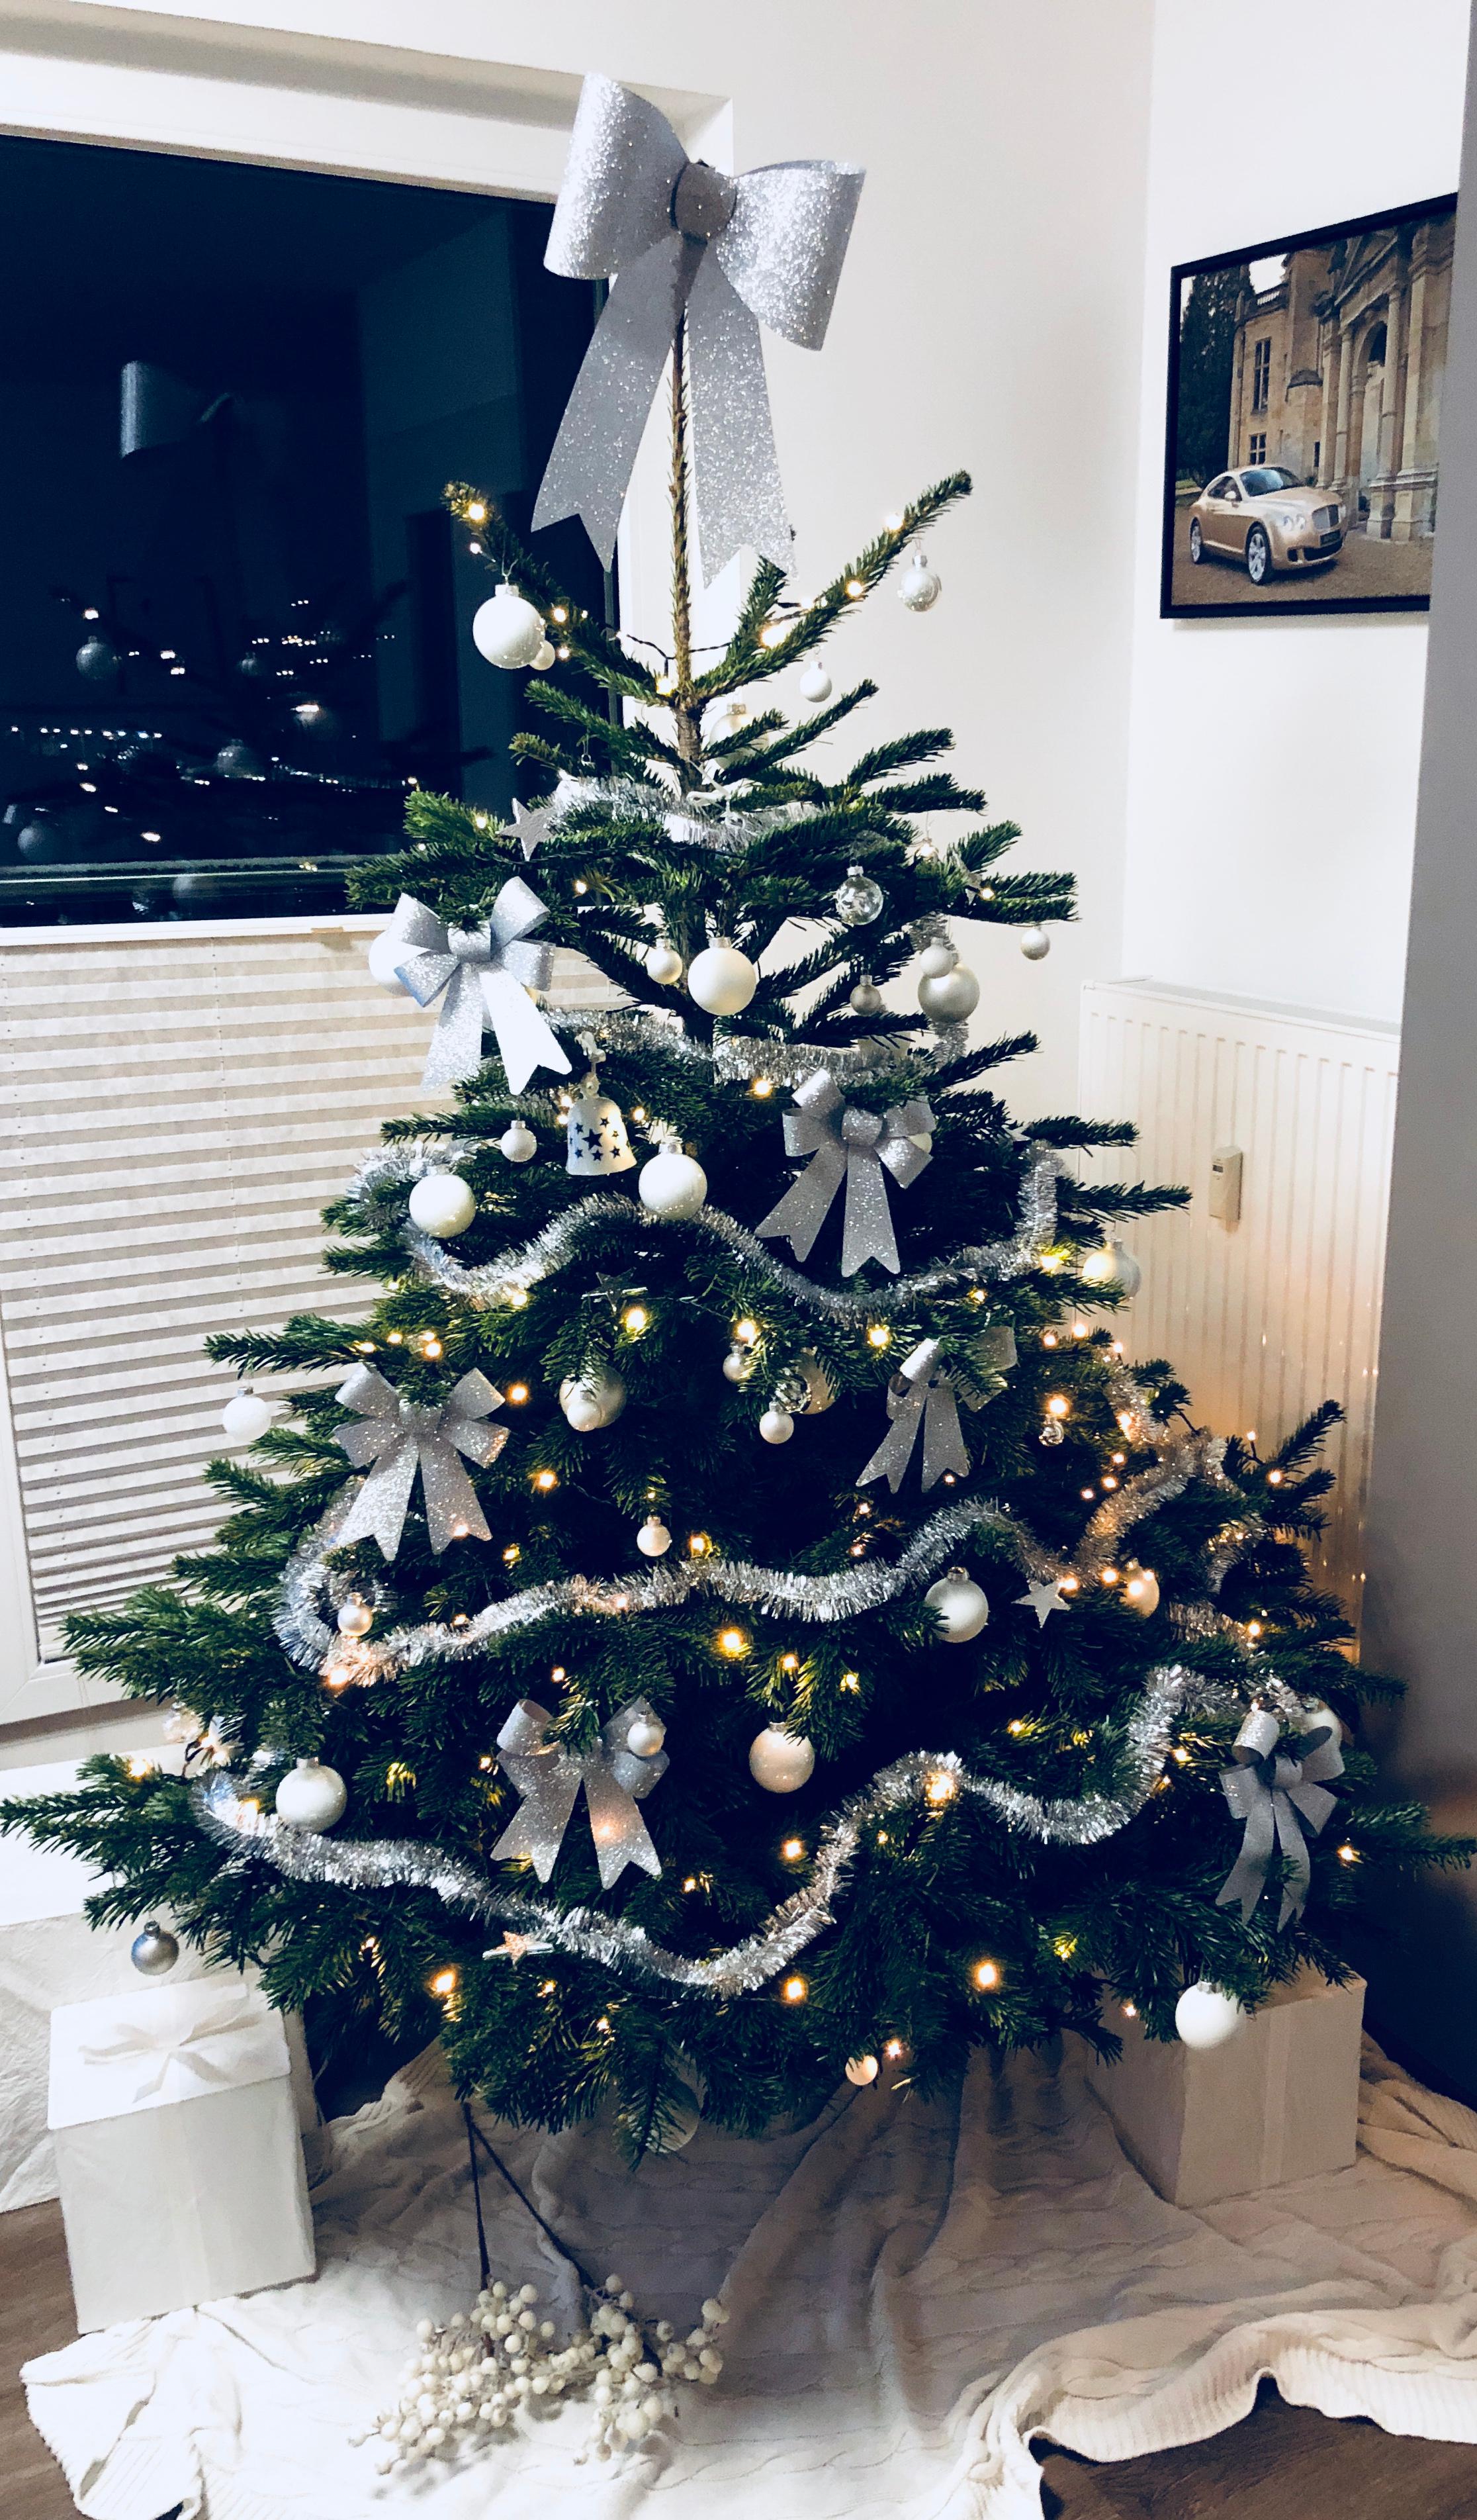 #weihnachtsbaum #christbaum #tannenbaum #xmas #weihnachten #xmasdeko #advent #weihnachtsdeko  #gemütlicheswohnzimmer